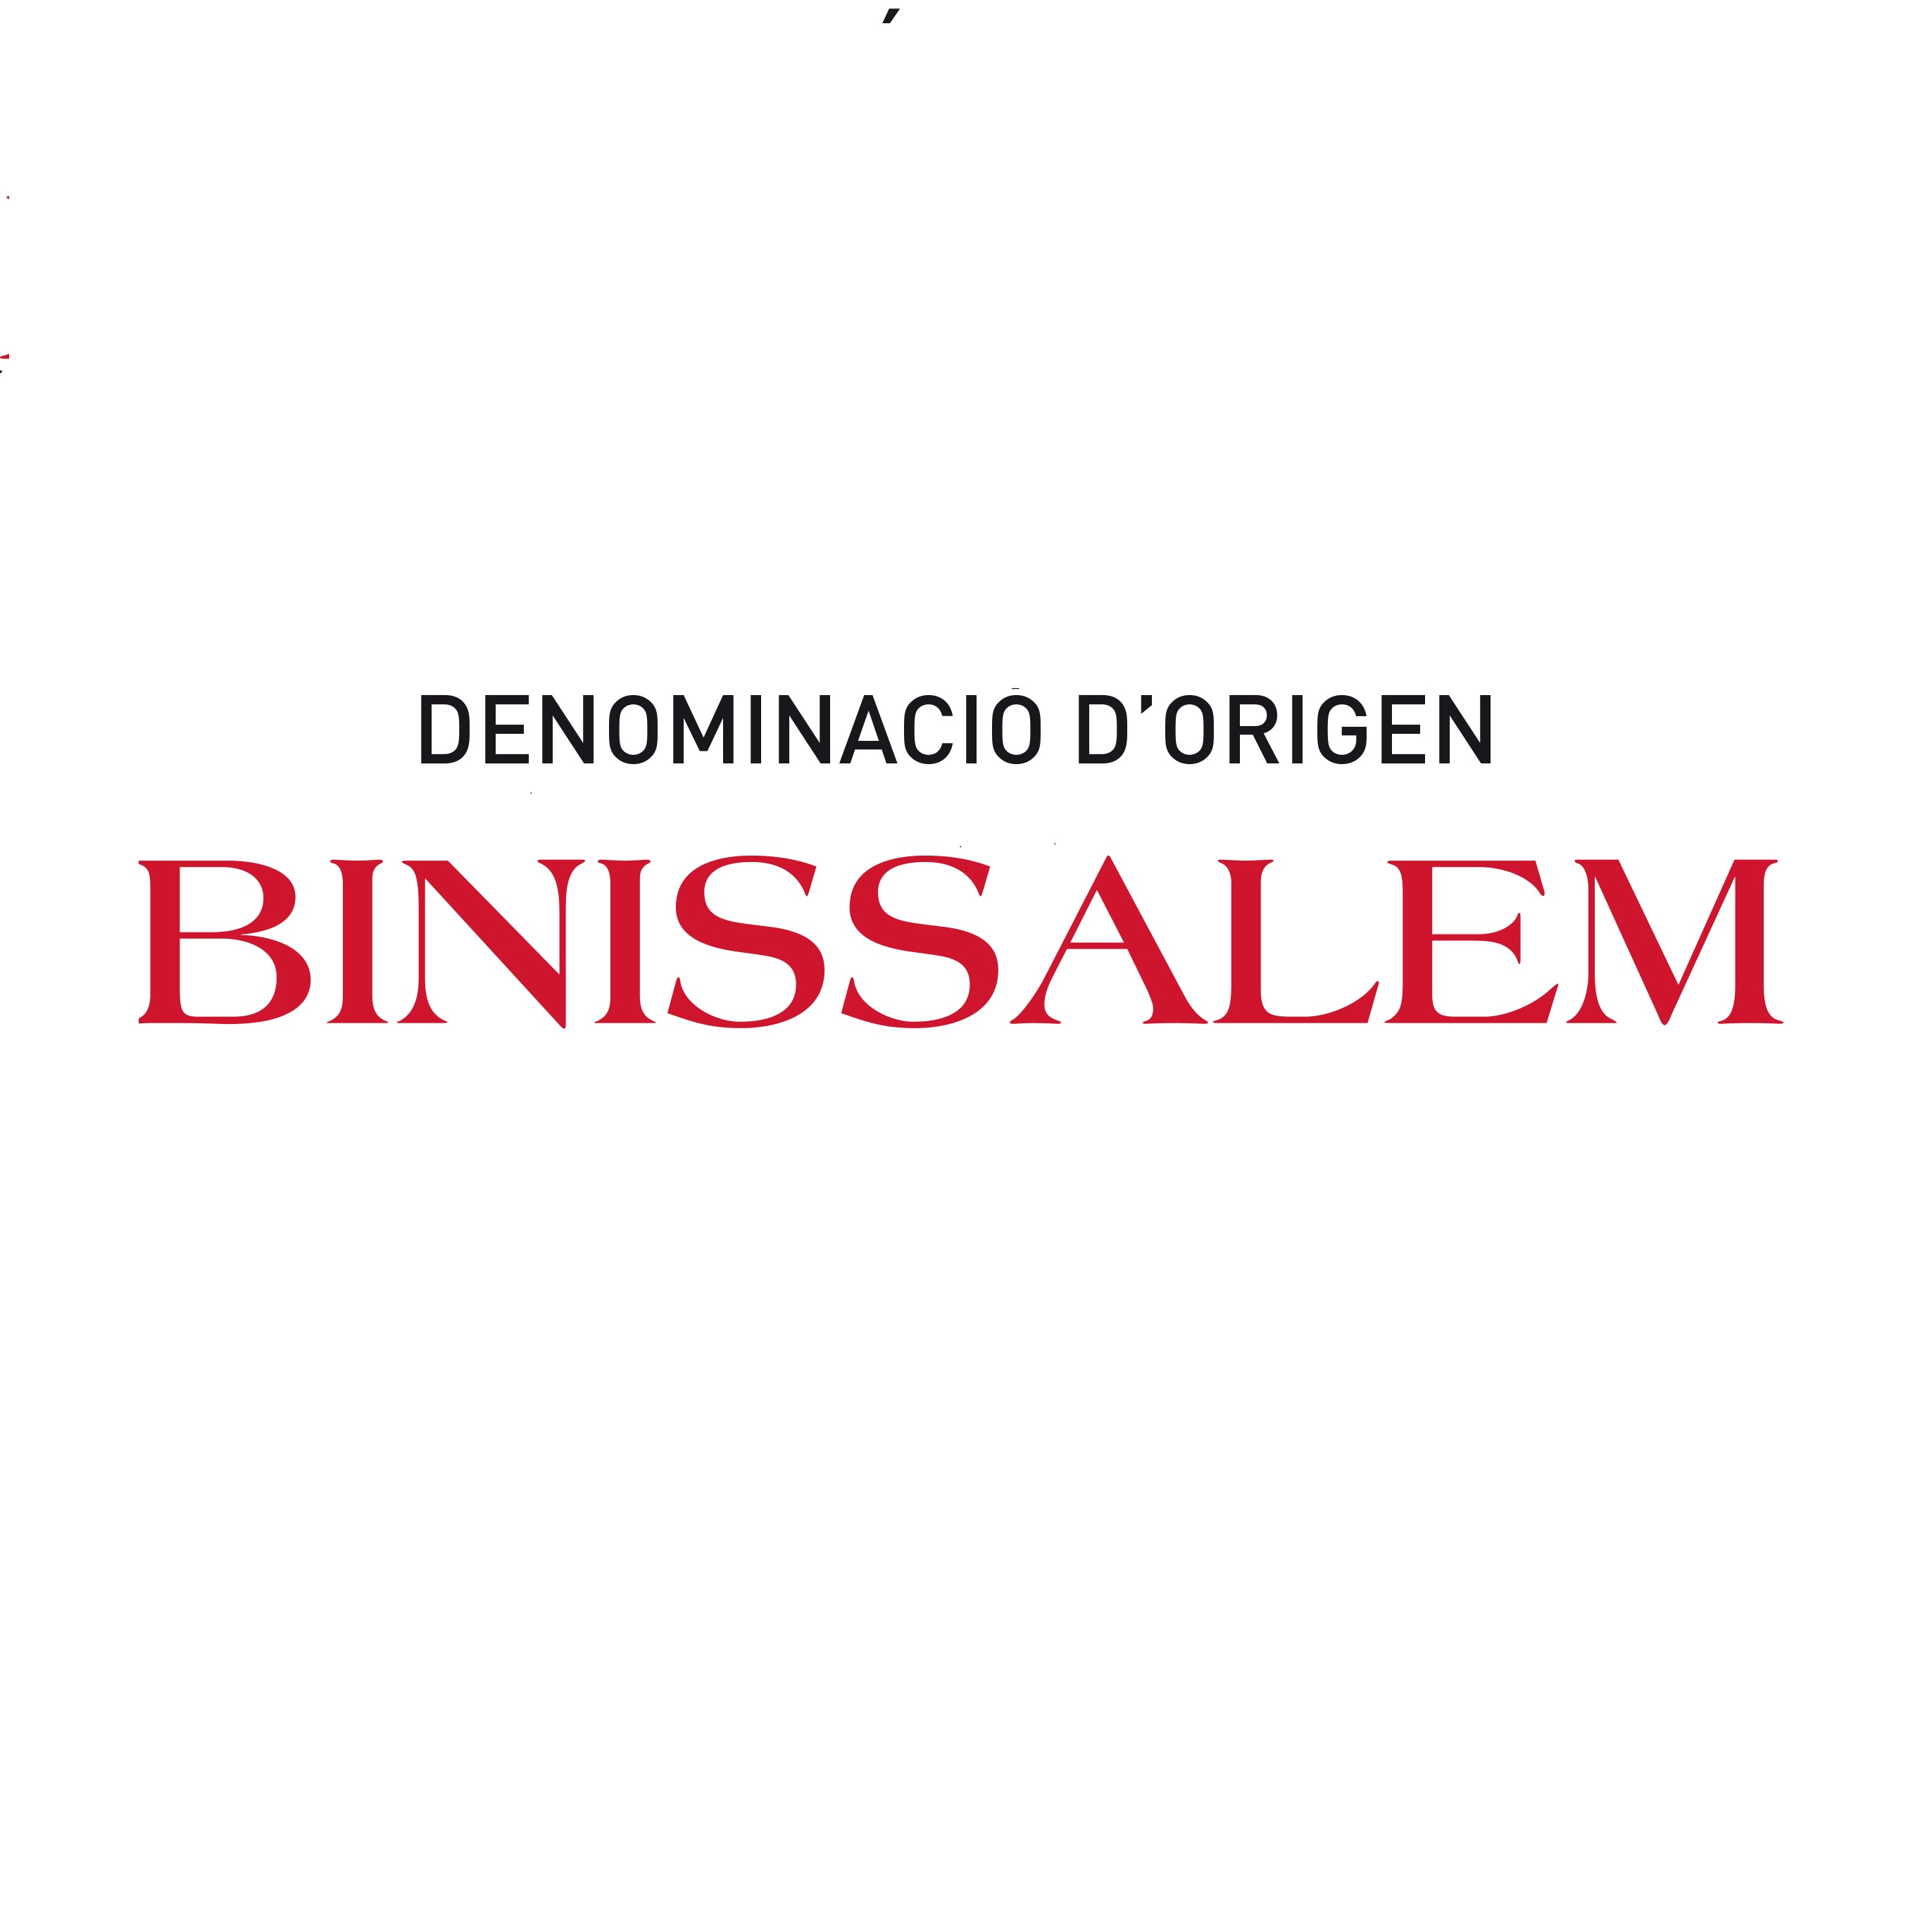 DO Binissalem - Galeria de imágenes - Islas Baleares - Productos agroalimentarios, denominaciones de origen y gastronomía balear